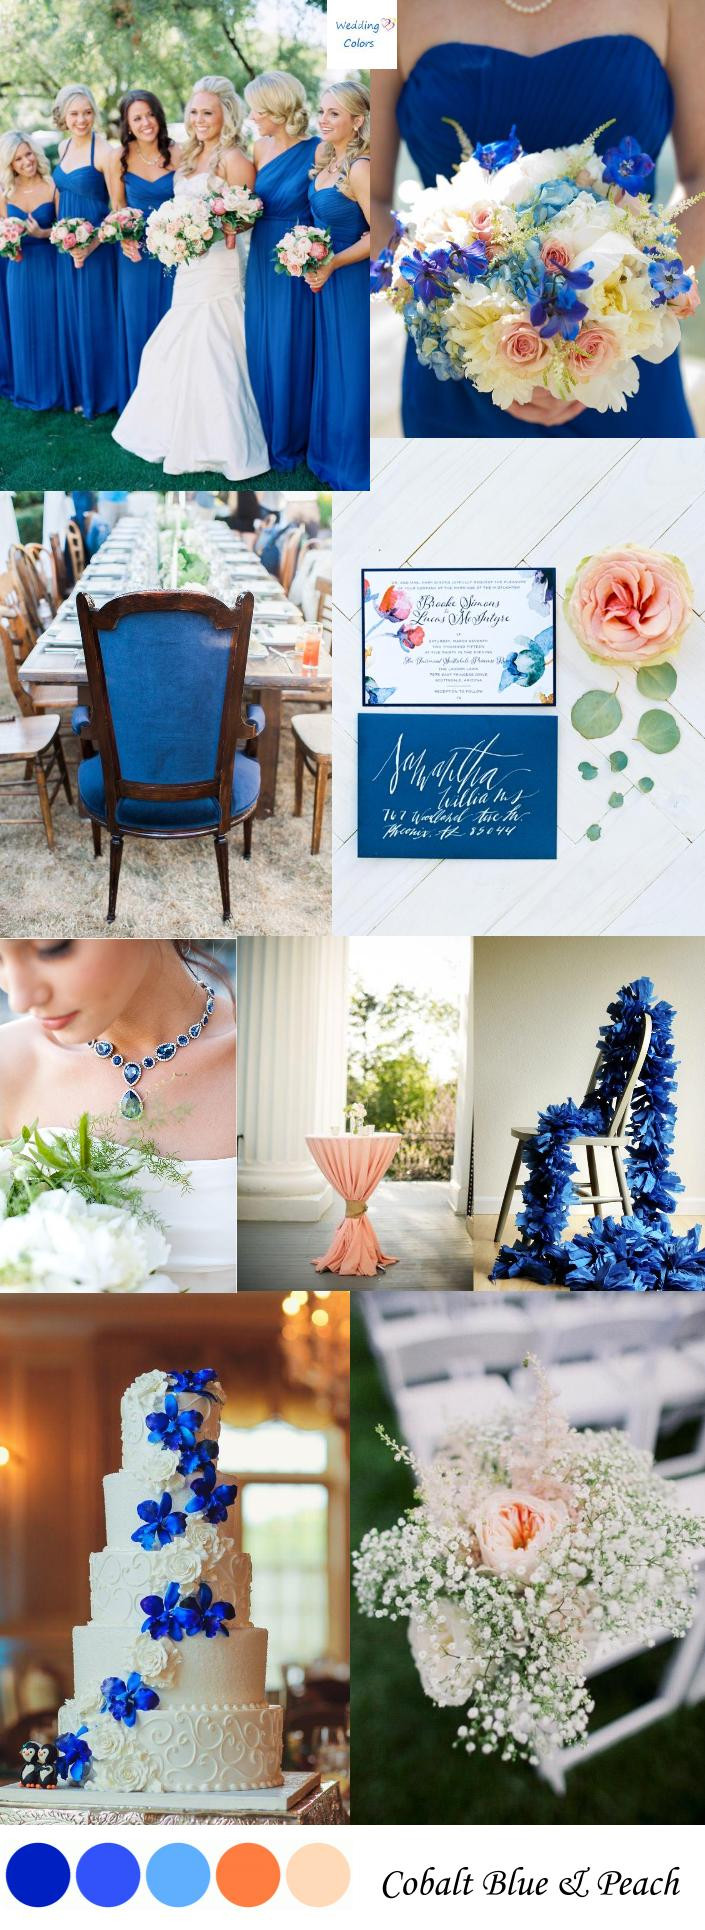 Peach Color Wedding
 Cobalt Blue & Peach Wedding Color Inspiration